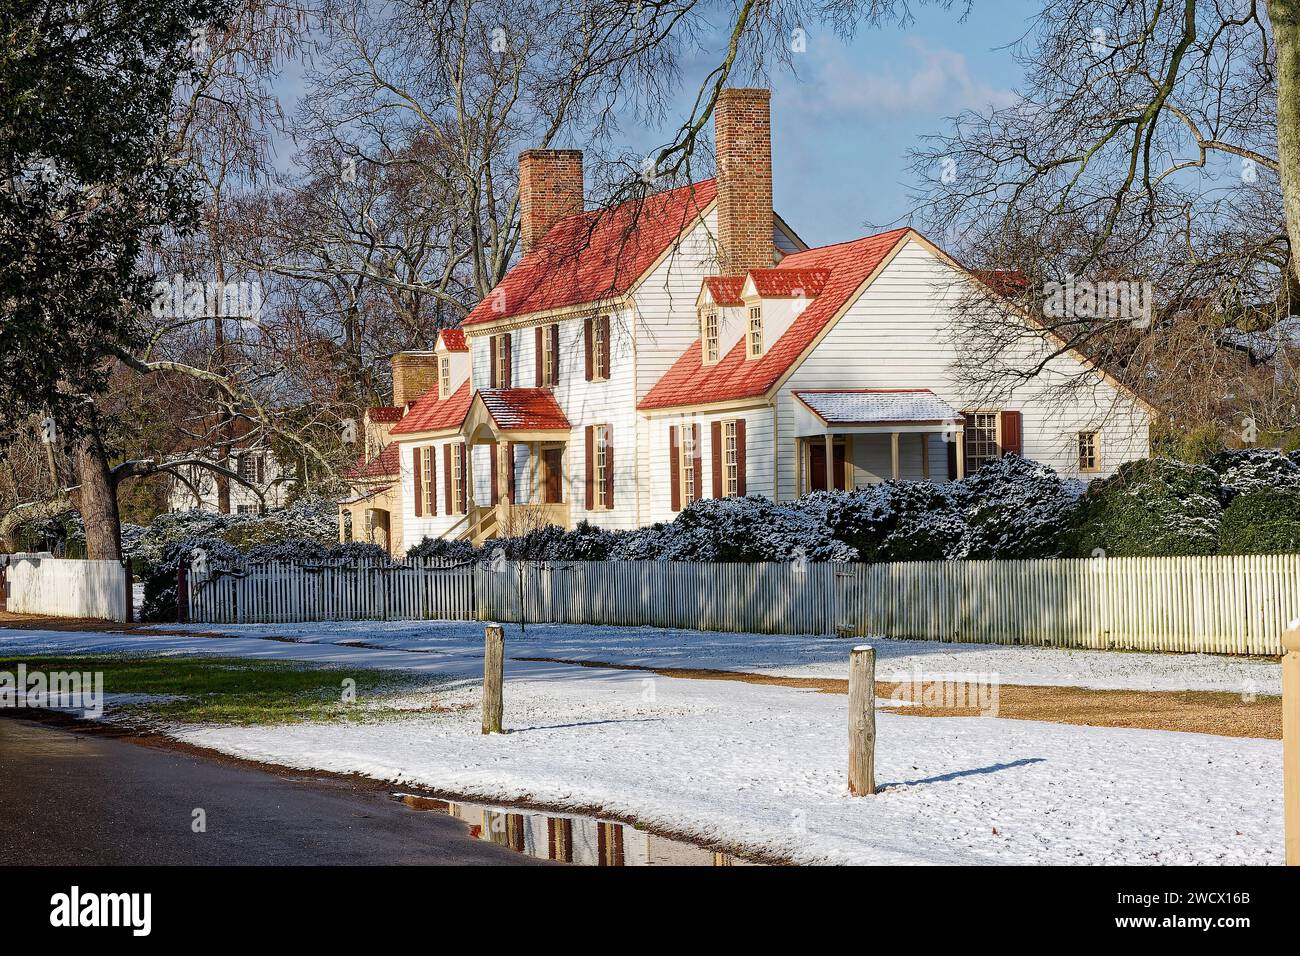 casa, cornice bianca, tetto rosso-arancione, persiane, stile coloniale, recinzione per picchetti, 2 camini in mattoni, arbusti, alberi, neve, Winter, Williamsburg; va Foto Stock